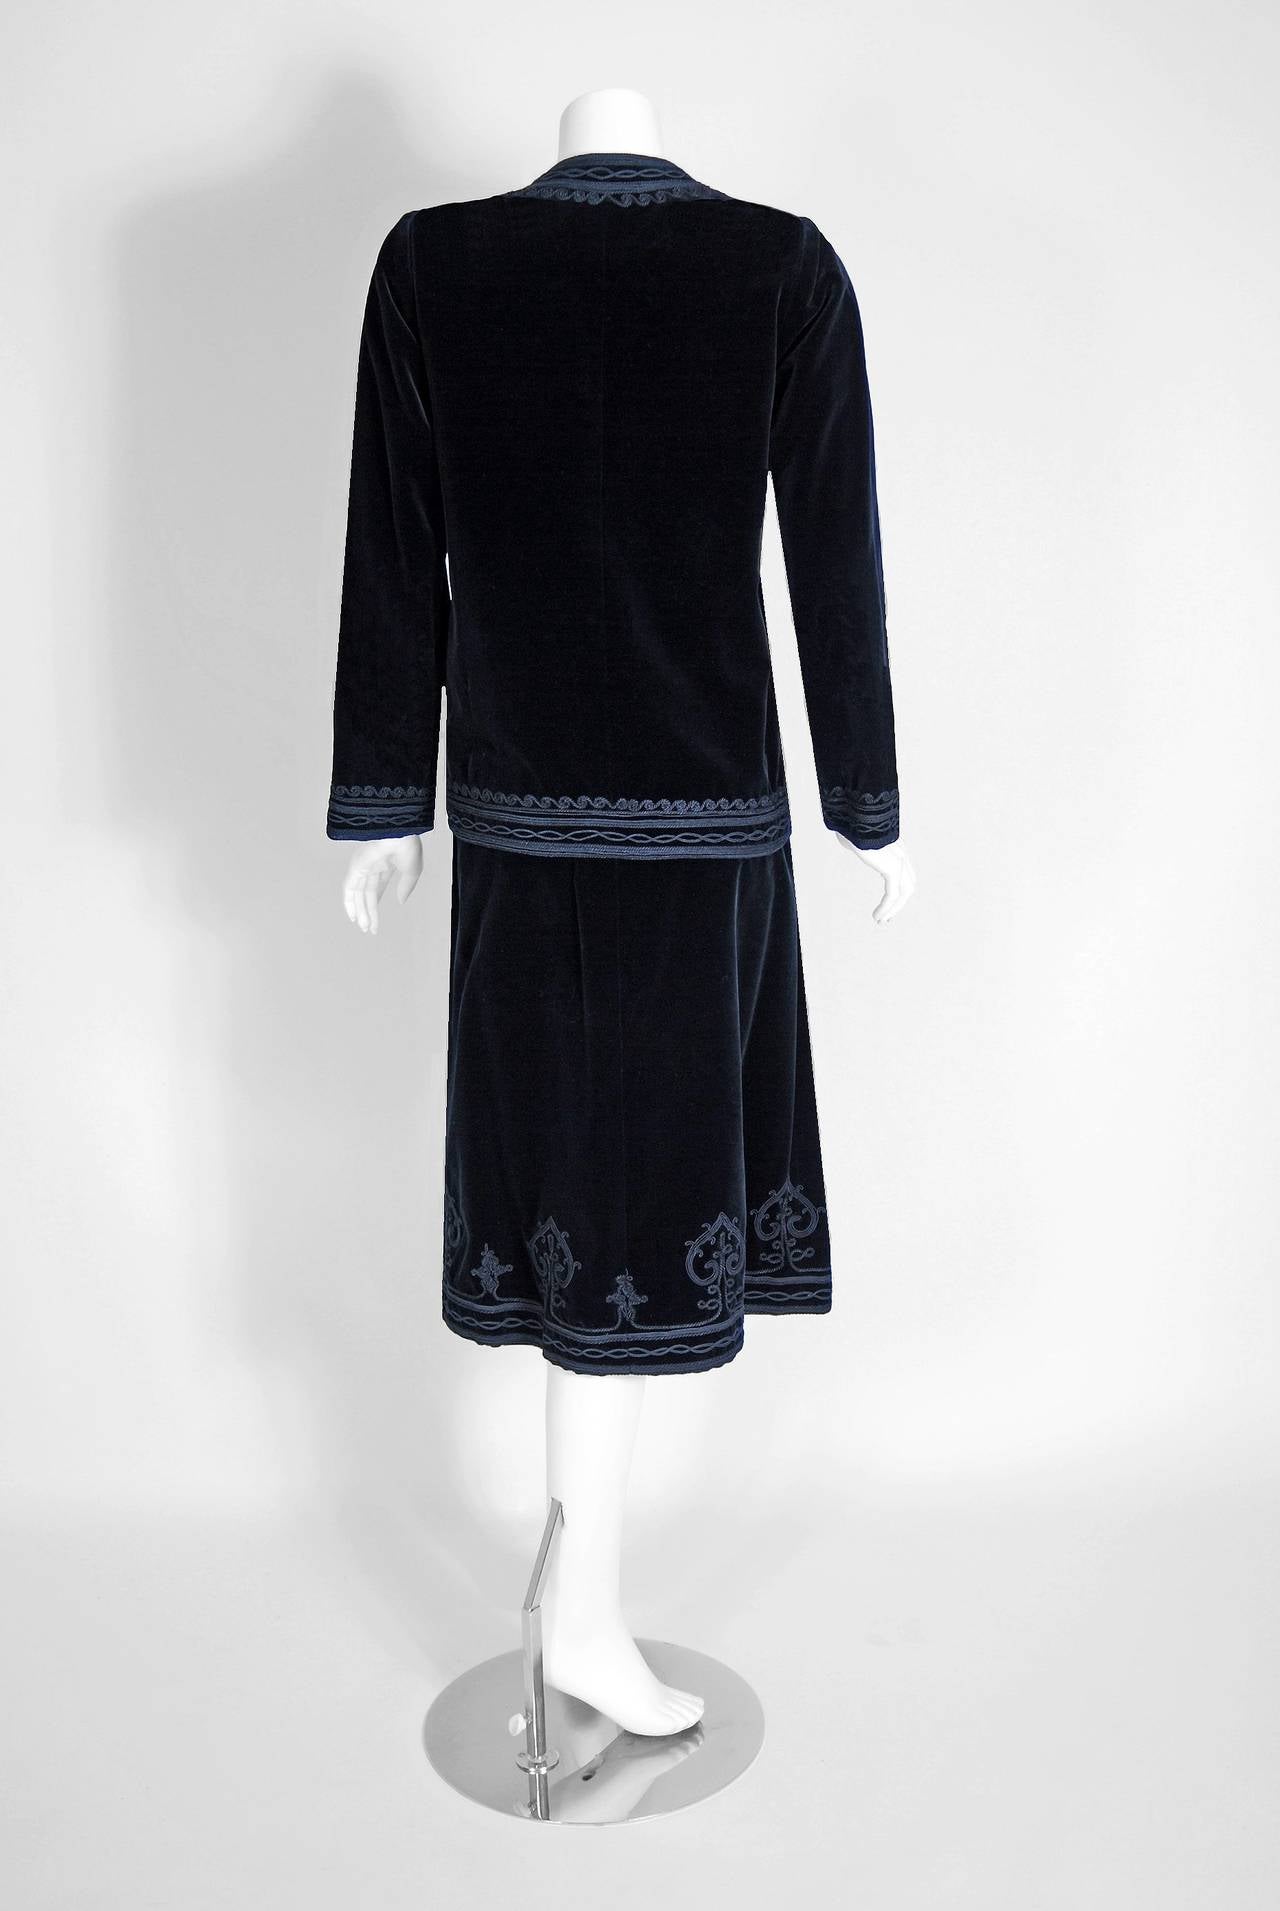 1976 Yves Saint Laurent Embroidered Black Velvet Bohemian Russian Jacket & Skirt 1